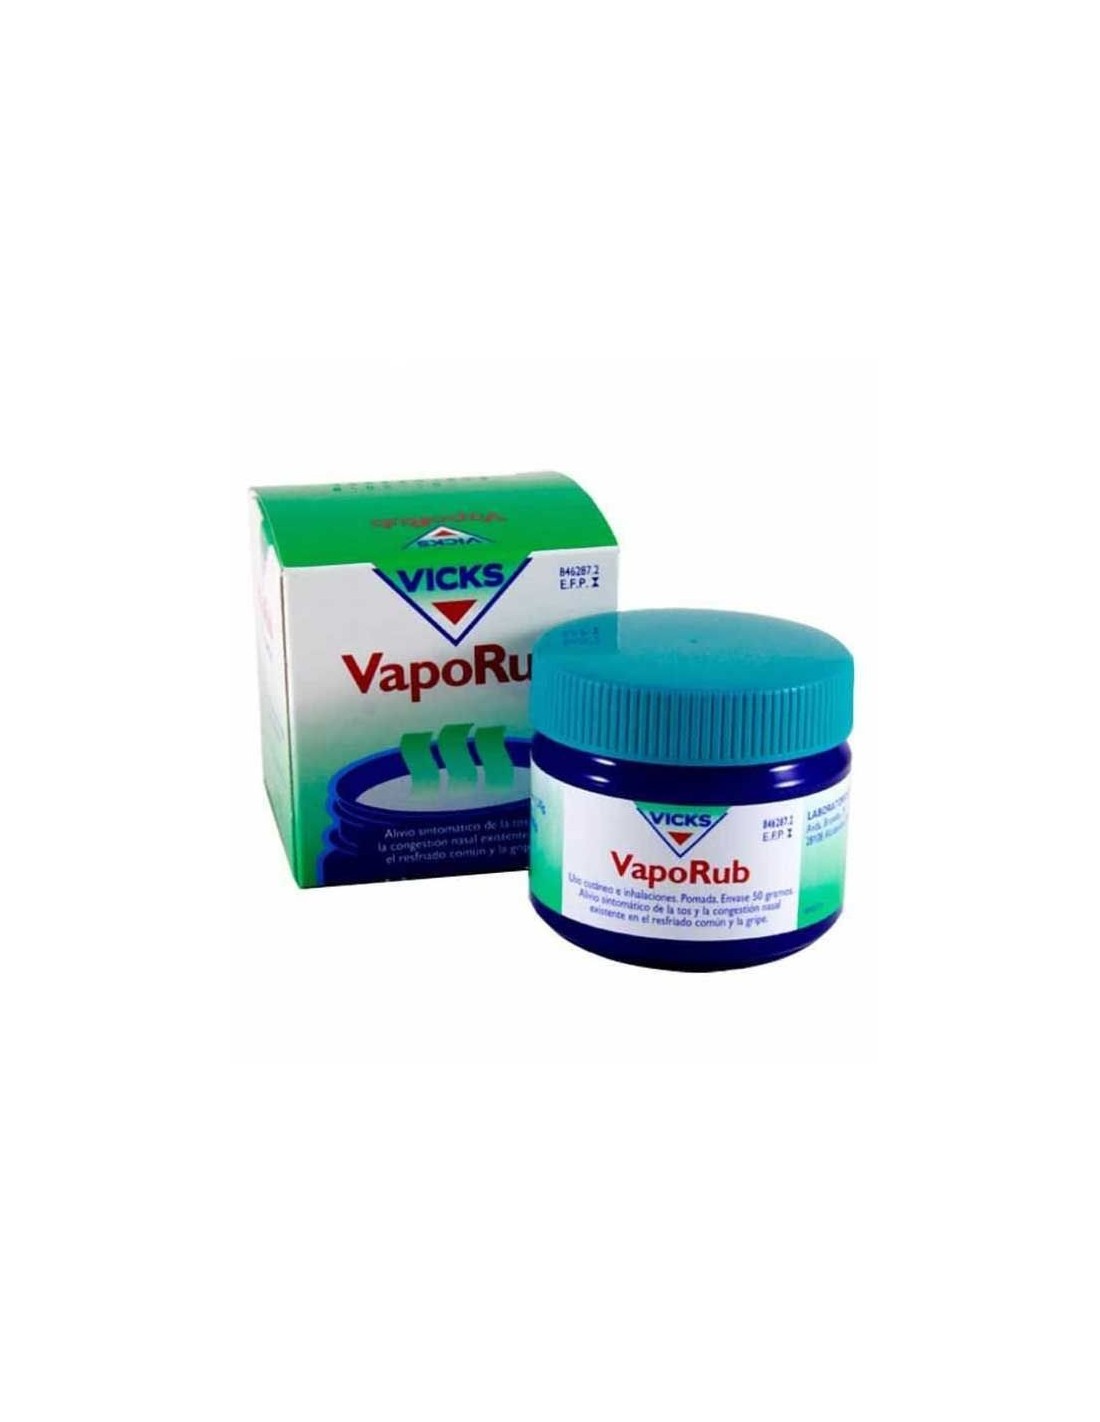 Vaporub pomada ayuda a la congestión nasal y la tos para ayudarte a dormir  como un bebé #vicksvaporub #vaporub #vicks #tos #tosalivio